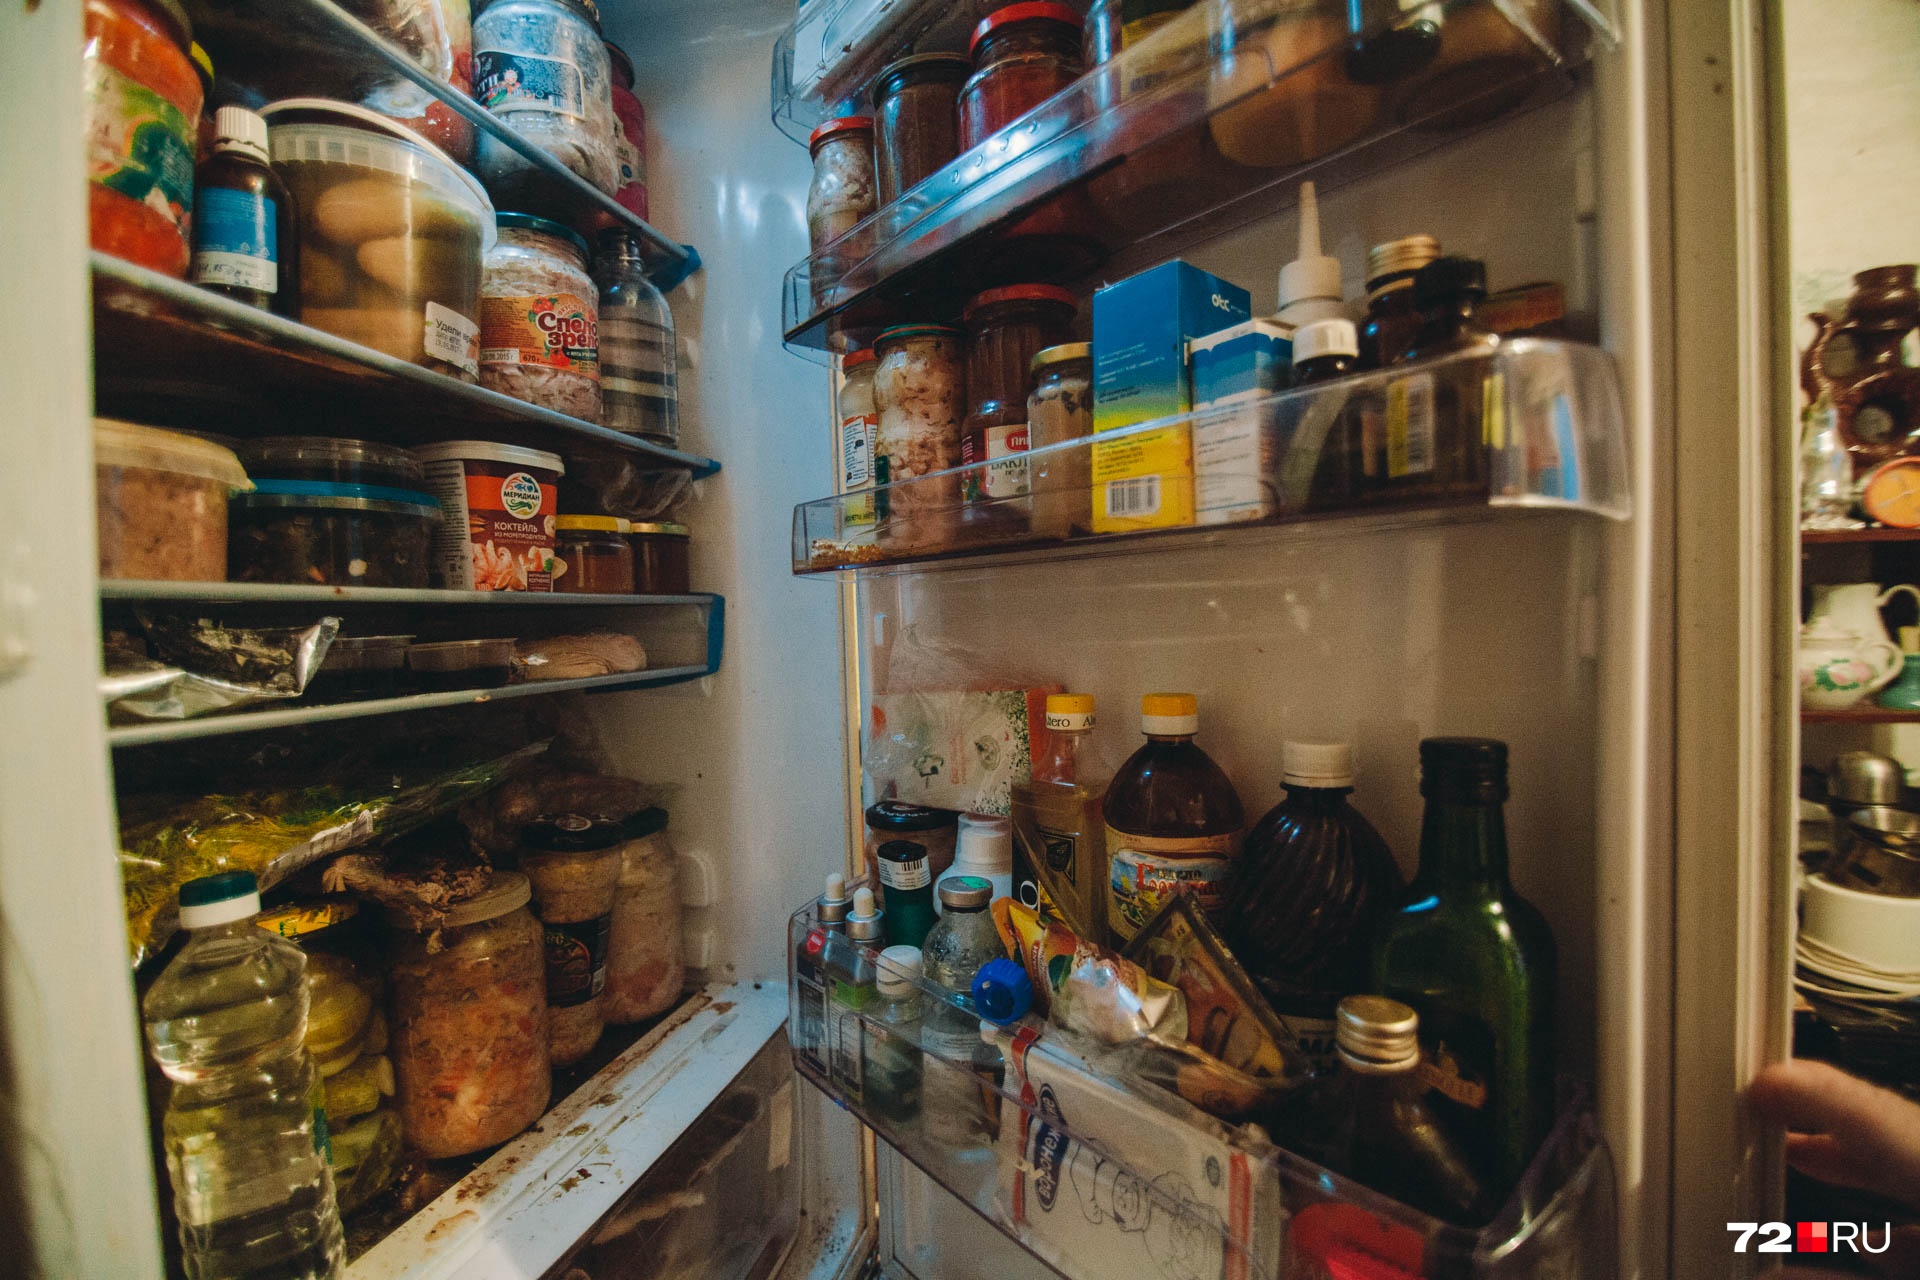 Полные холодильники пенсионер считает хорошим признаком. Вероятно, сказалось голодное детство